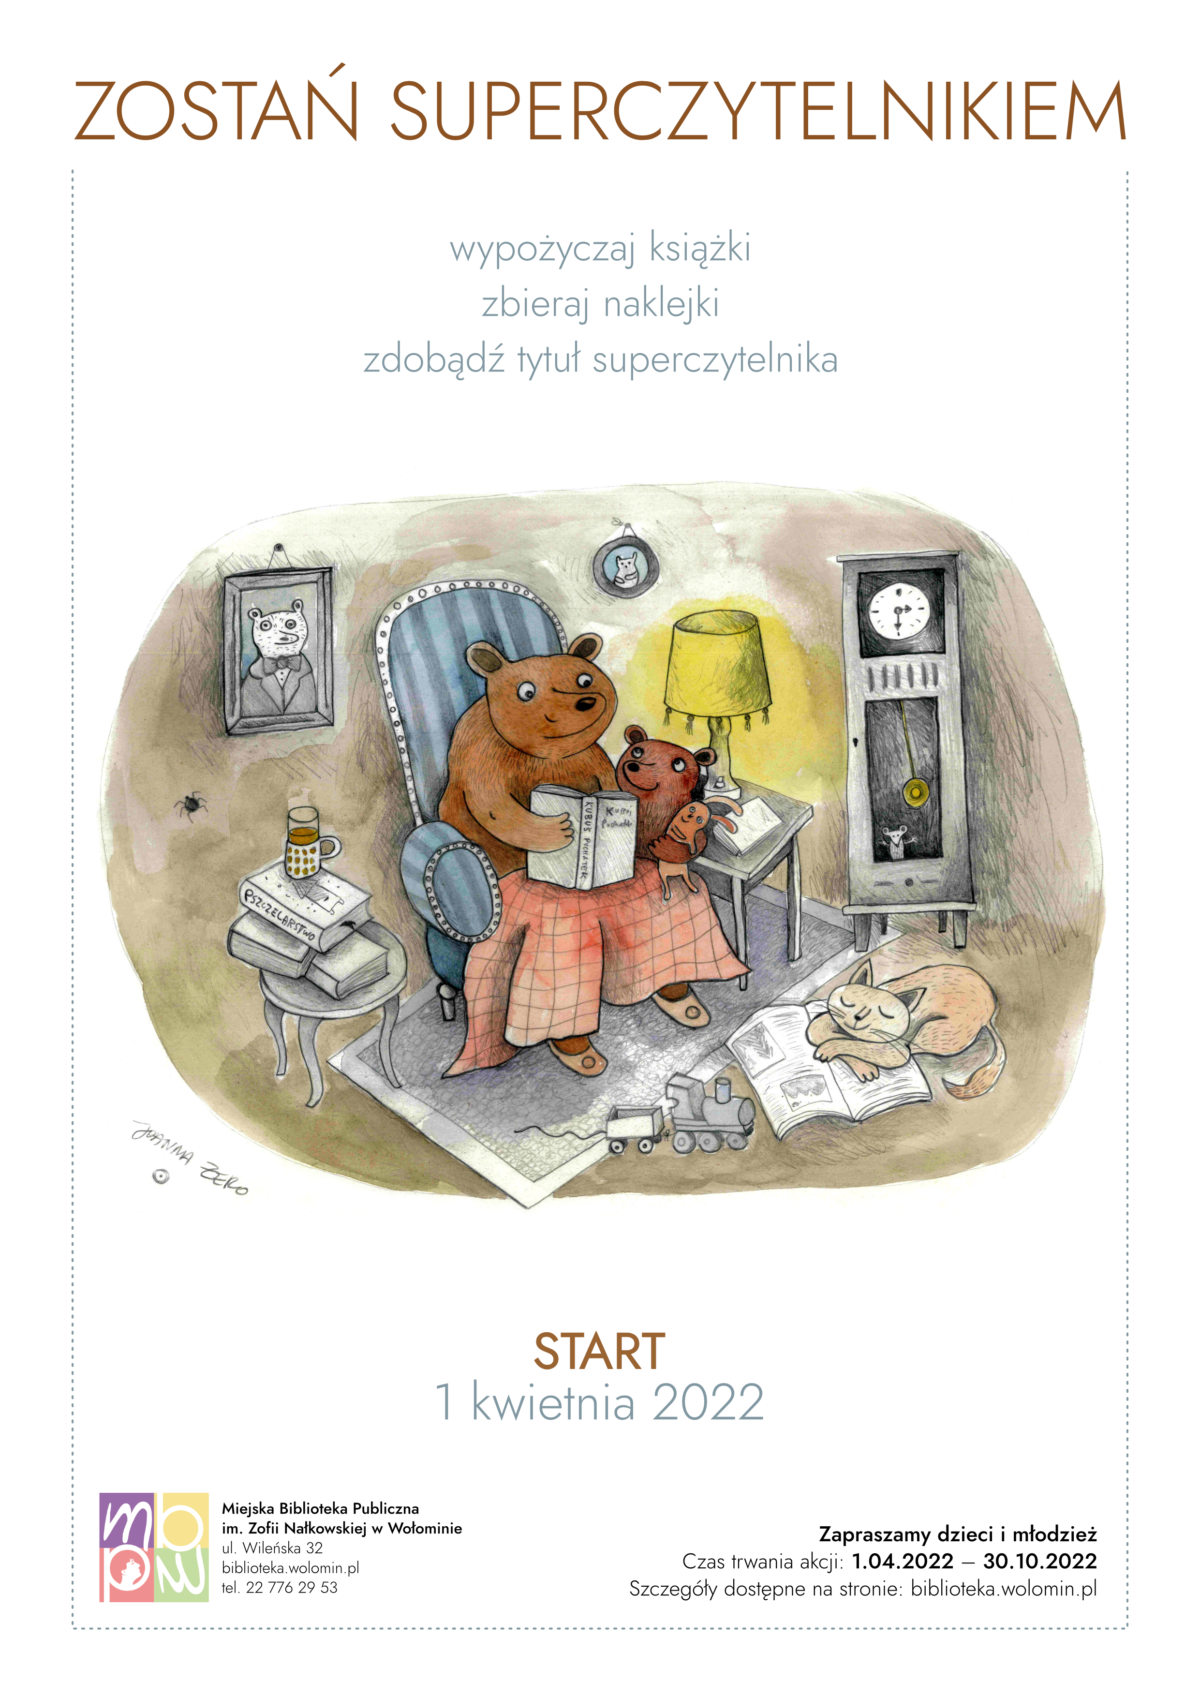 Grafika niedźwiedzia w norze czytającego książkę swojemu dziecku. W tle znajduje się zegar, dwa obrazy, pająk, stolik z lampą. Na pierwszym planie kot na gazecie, ciuchcia, herbata na książkach na stoliku